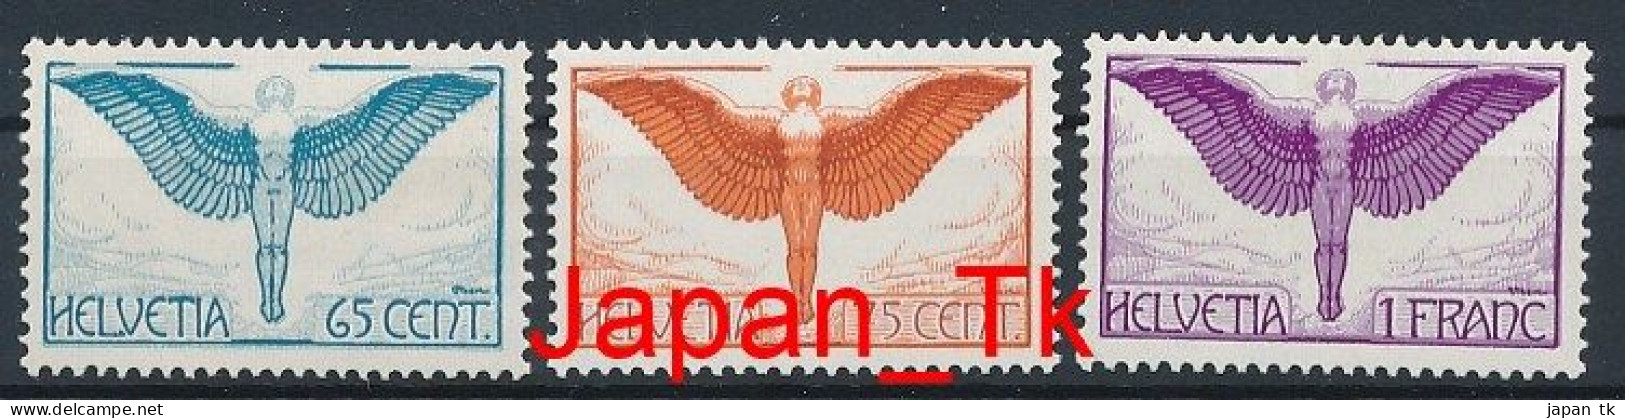 SCHWEIZ Mi. Nr. 189-191 Flugpostmarken - Siehe Scan - MNH - Nuovi